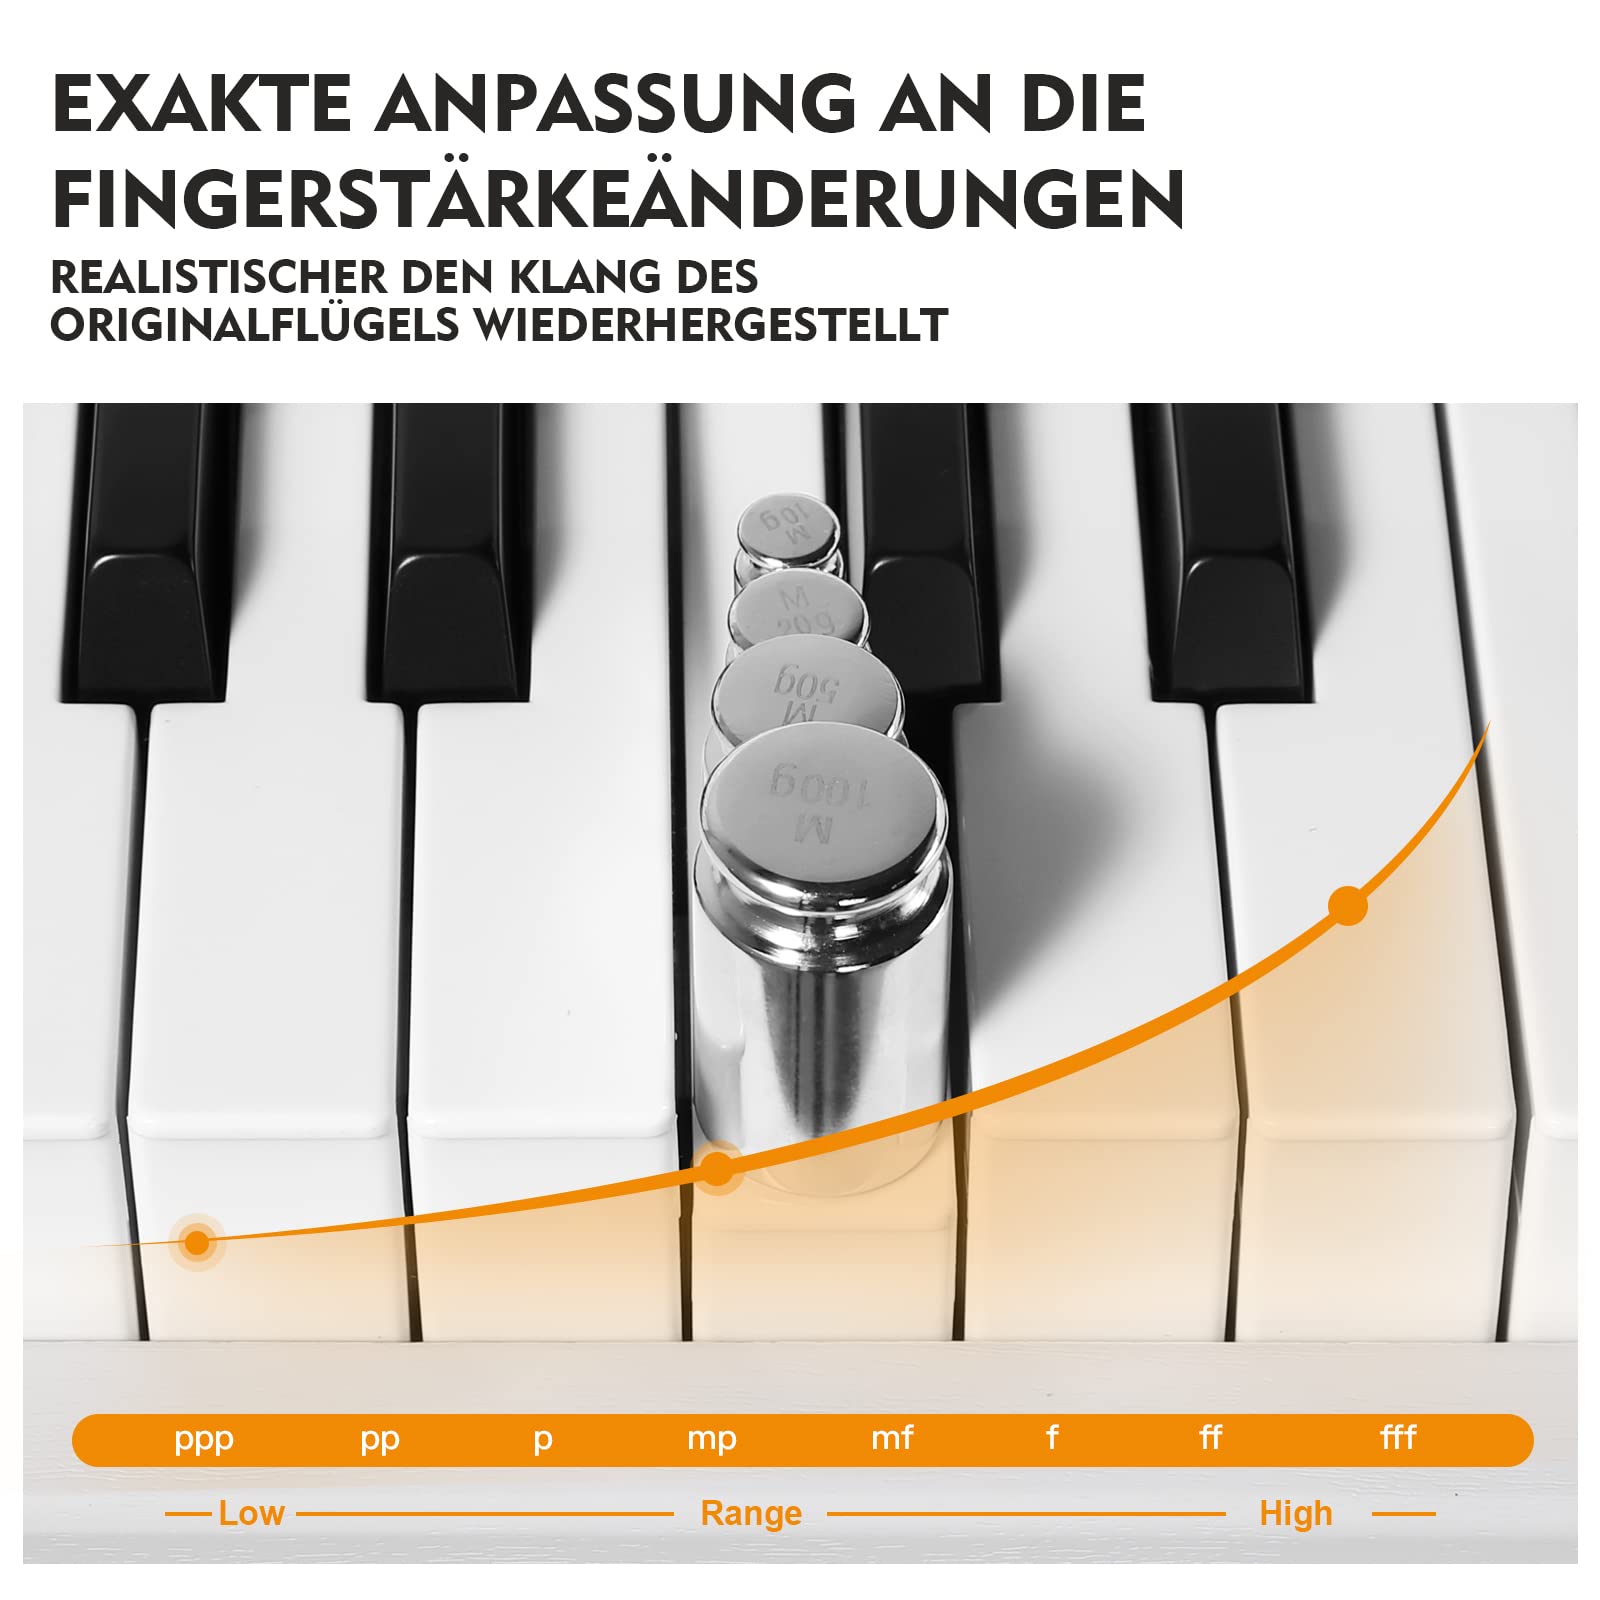 MUSTAR E Piano Digital 88 Tasten, Keyboard mit halbgewichteten & Bluetooth, Portable Set mit Sustain Pedal, Keyboardständer und Tragetasche, Weiß